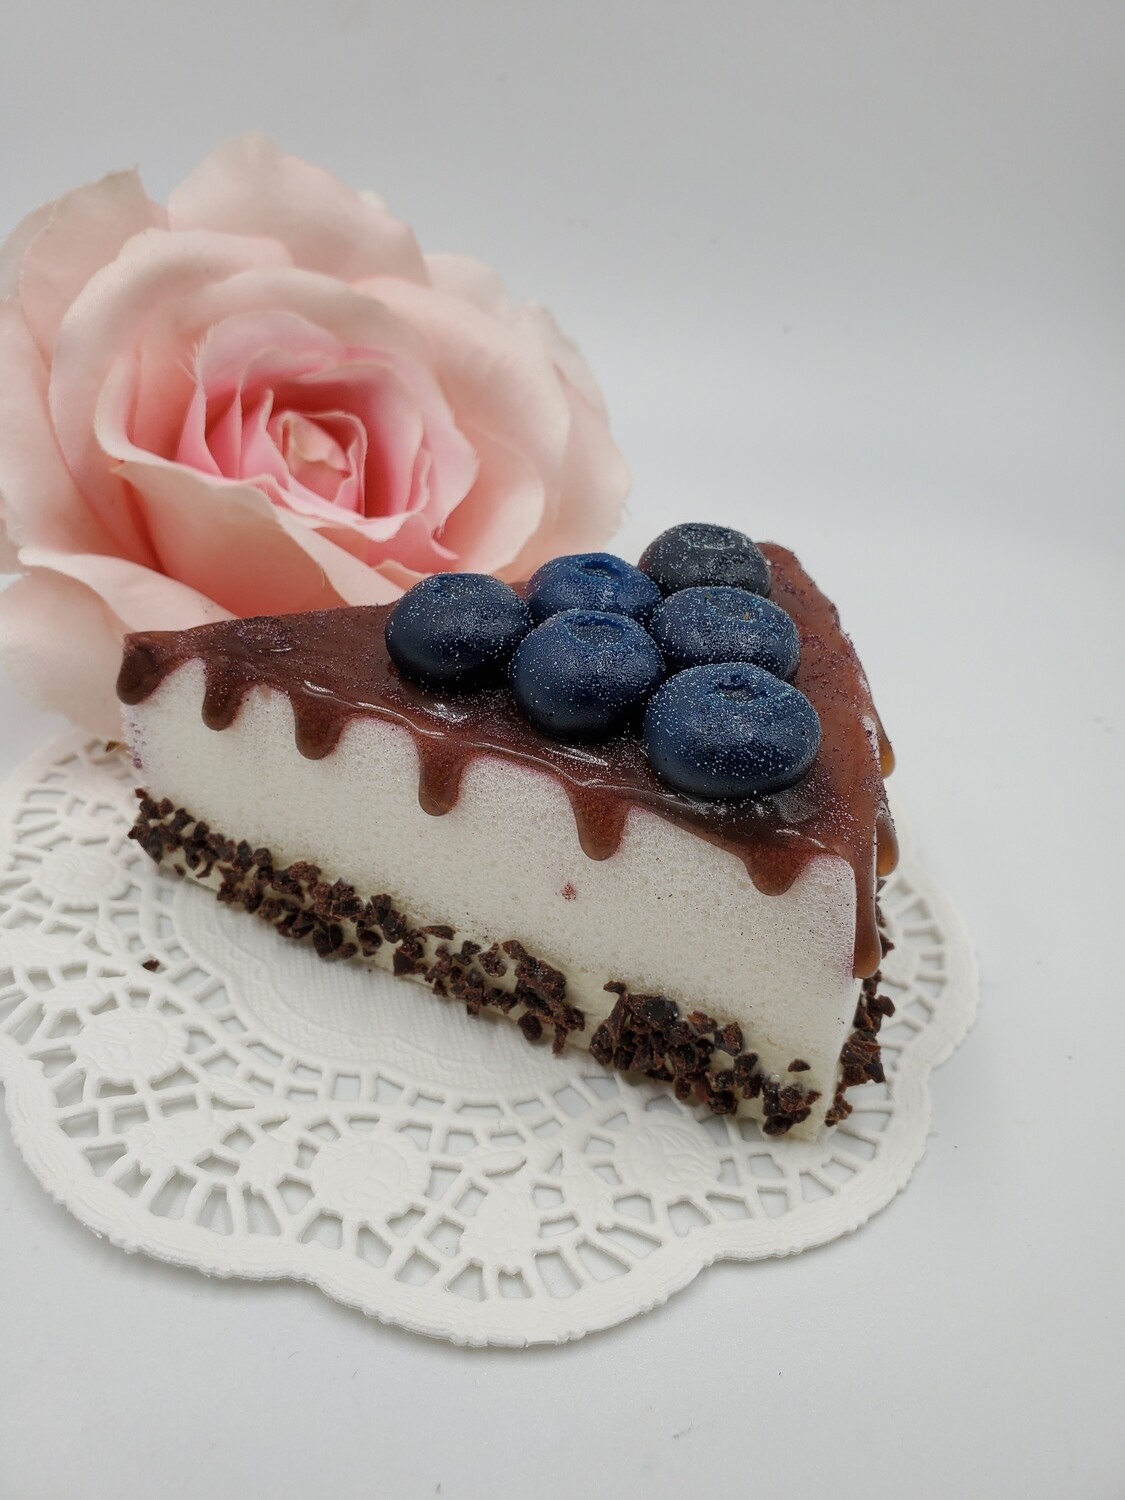 Magnet: Cake Slices "Blueberry"